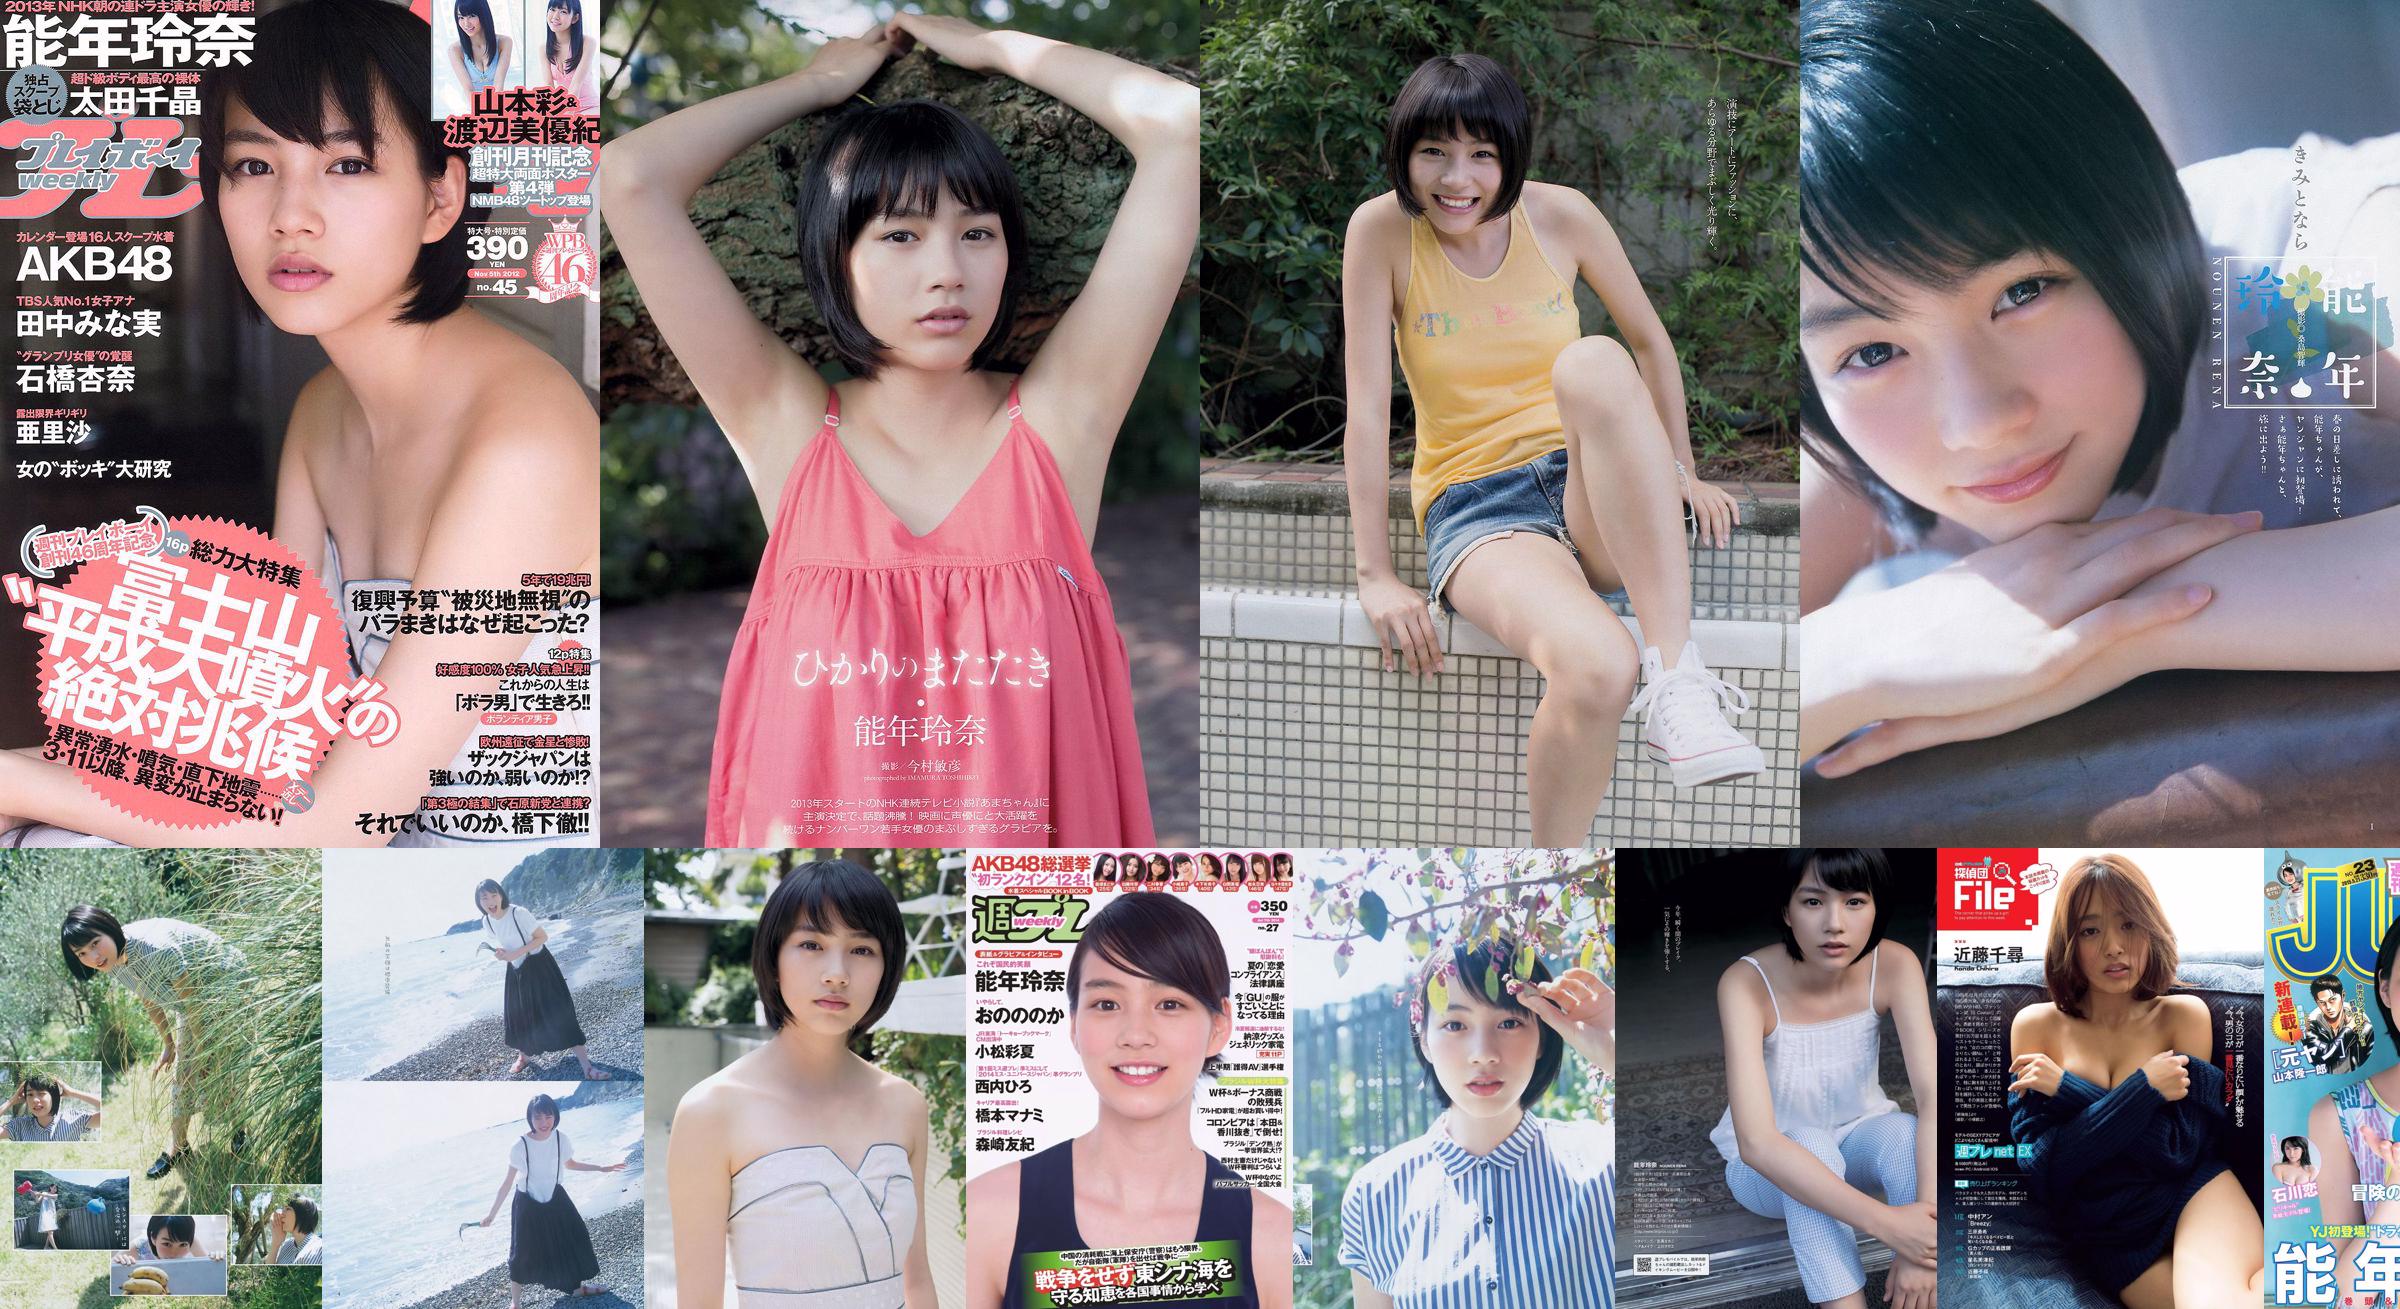 Rena Nonen Kazusa Okuyama & Haruka Fujikawa Ren Ishikawa [Lompatan Muda Mingguan] 2015 Majalah Foto No.23 No.a4568a Halaman 9